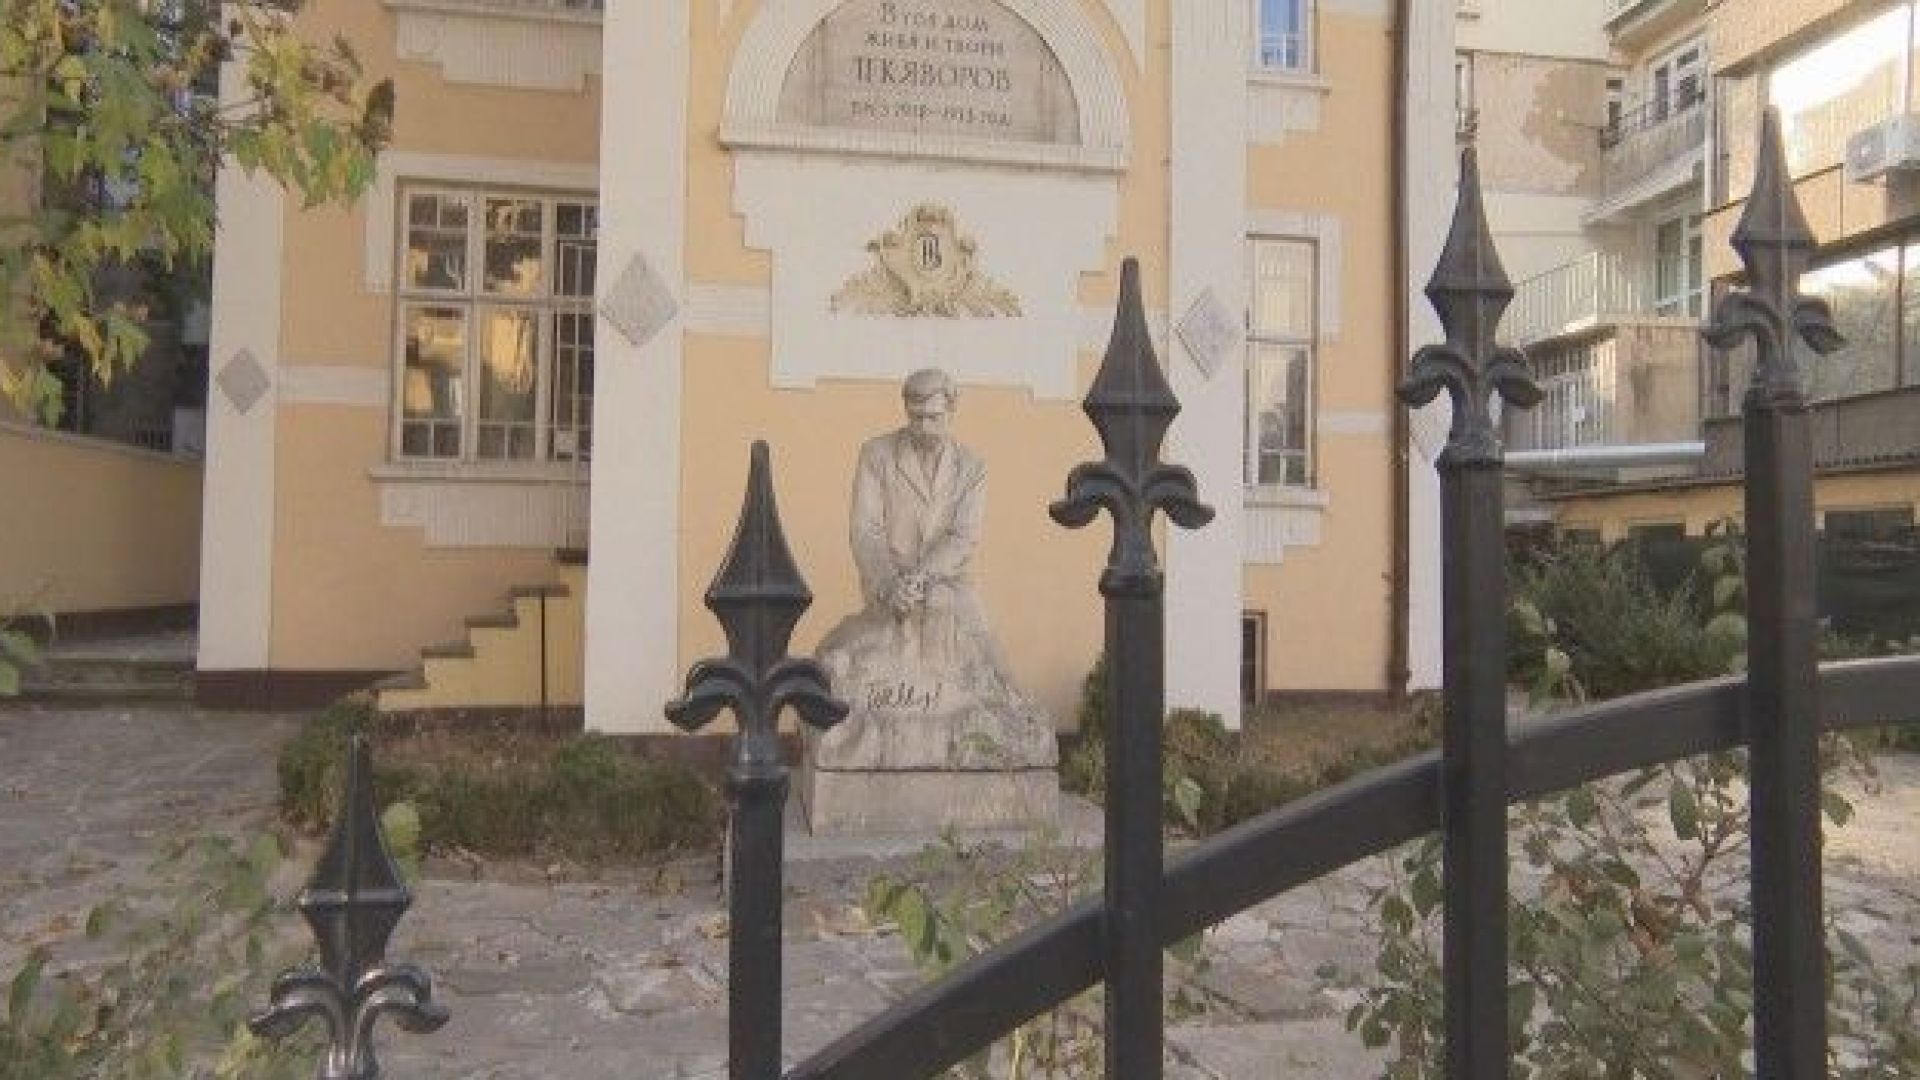 Къщата на Яворов е част от културно историческото наследство на София